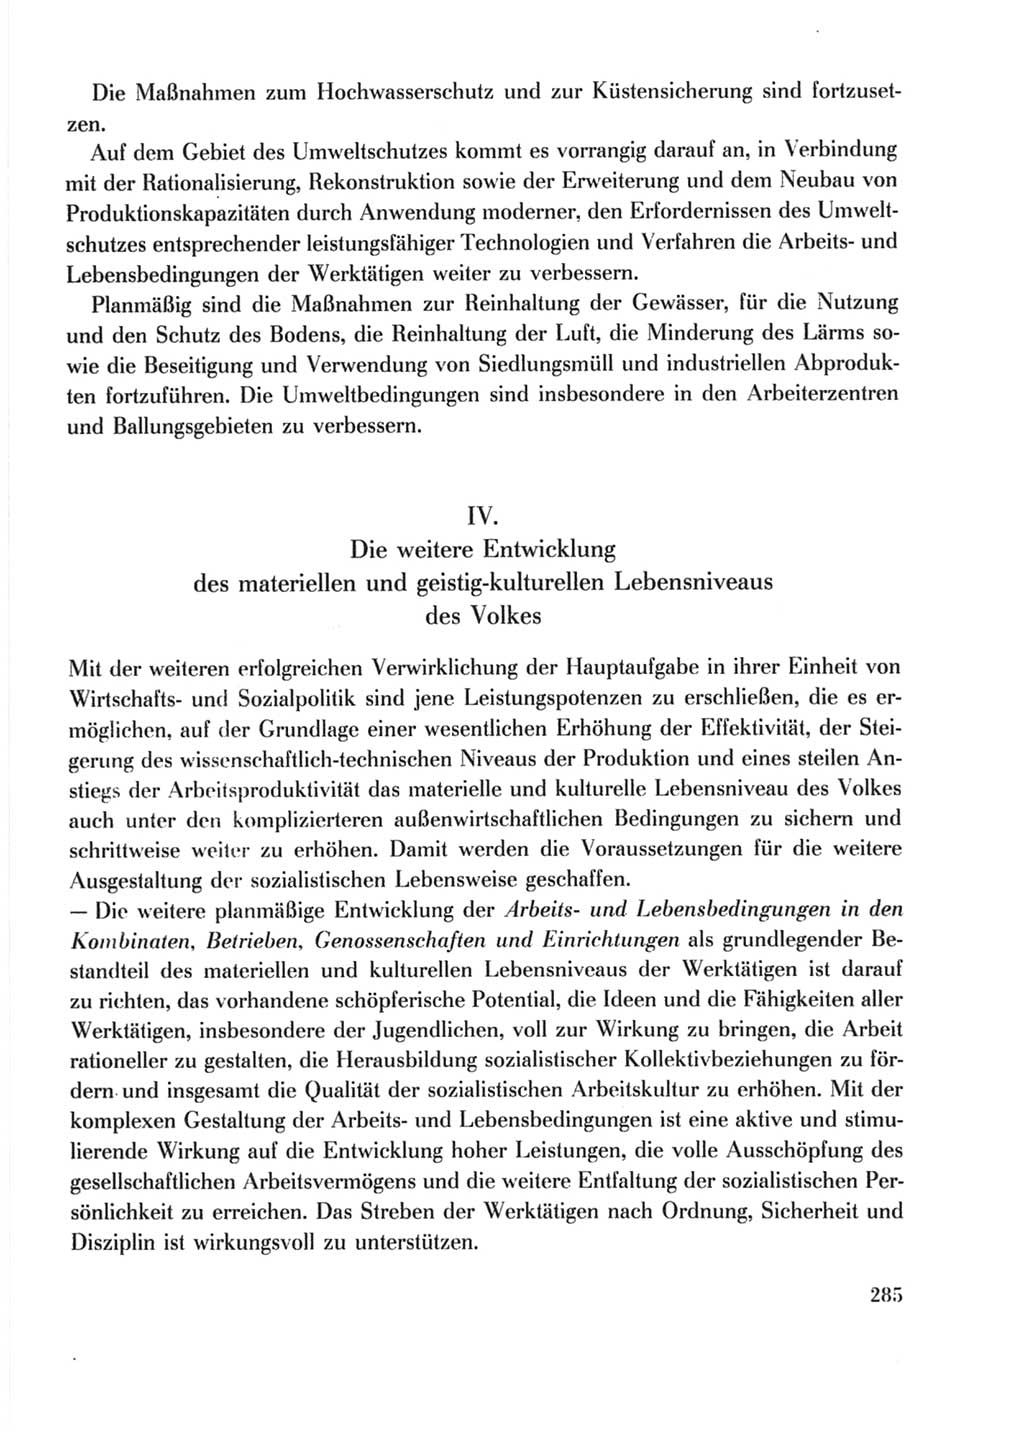 Protokoll der Verhandlungen des Ⅹ. Parteitages der Sozialistischen Einheitspartei Deutschlands (SED) [Deutsche Demokratische Republik (DDR)] 1981, Band 2, Seite 285 (Prot. Verh. Ⅹ. PT SED DDR 1981, Bd. 2, S. 285)